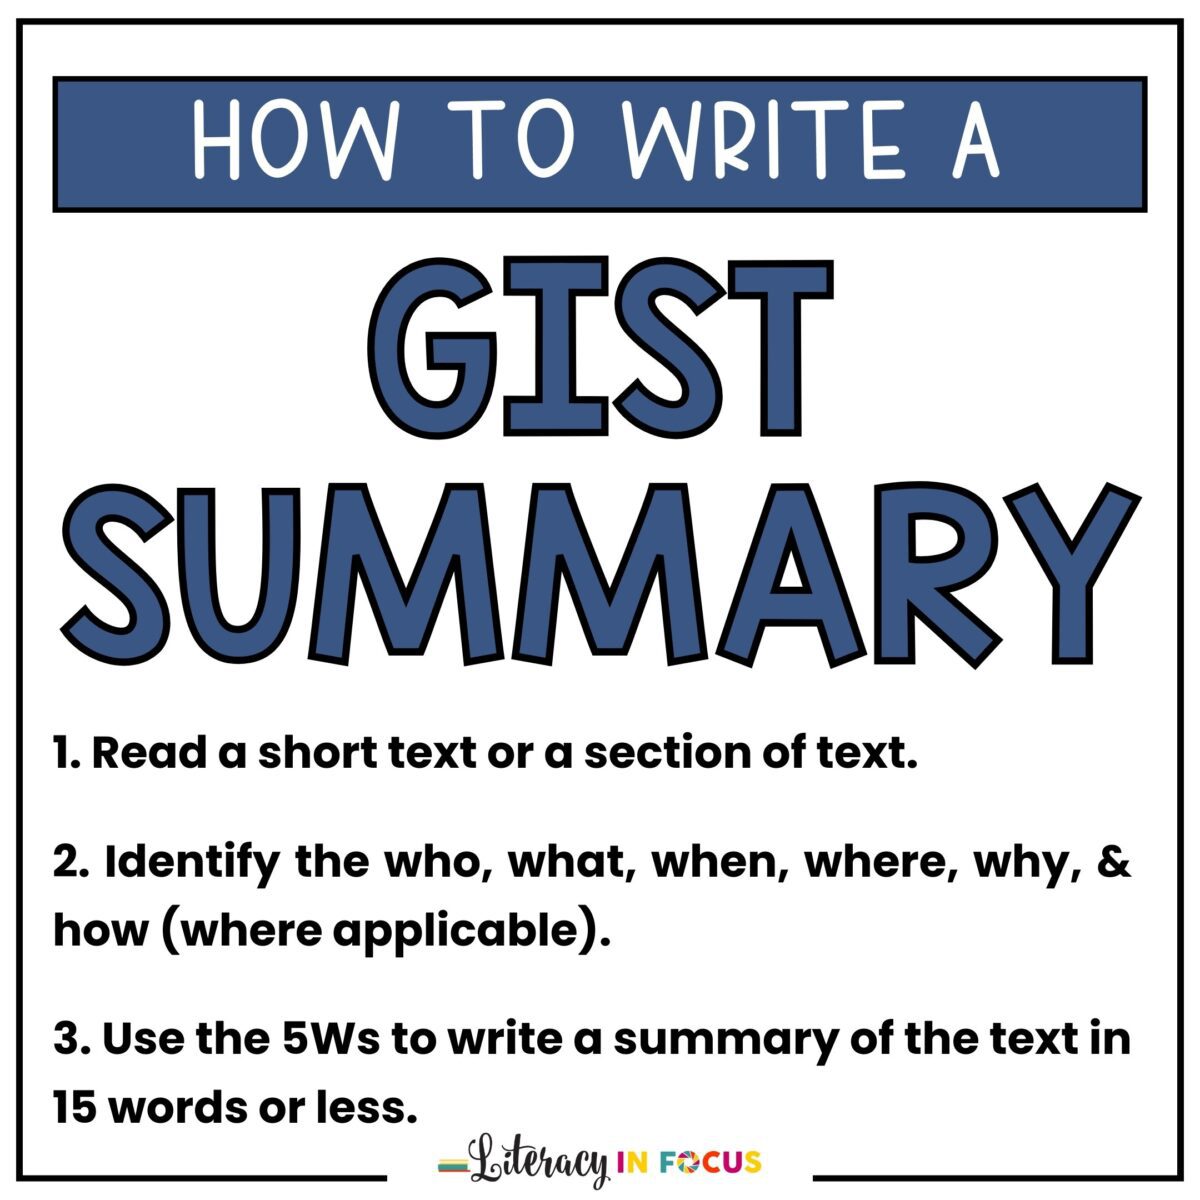 How to write a GIST summary